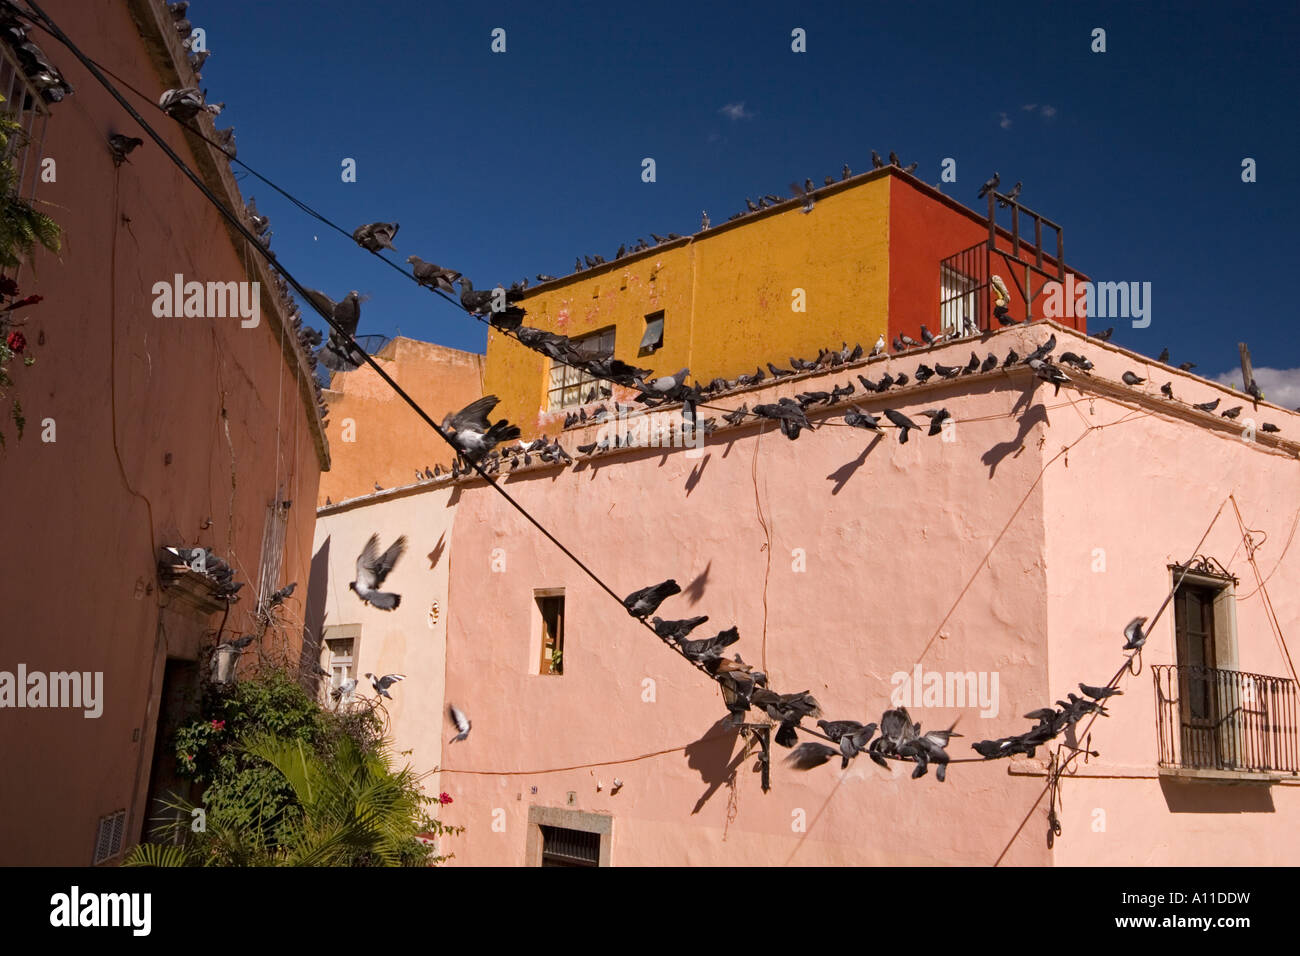 A Guanajuato quartiere popolare superamento da piccioni (Messico). Quartier populaire de Guanajuato envahi par les piccioni (Mexique). Foto Stock